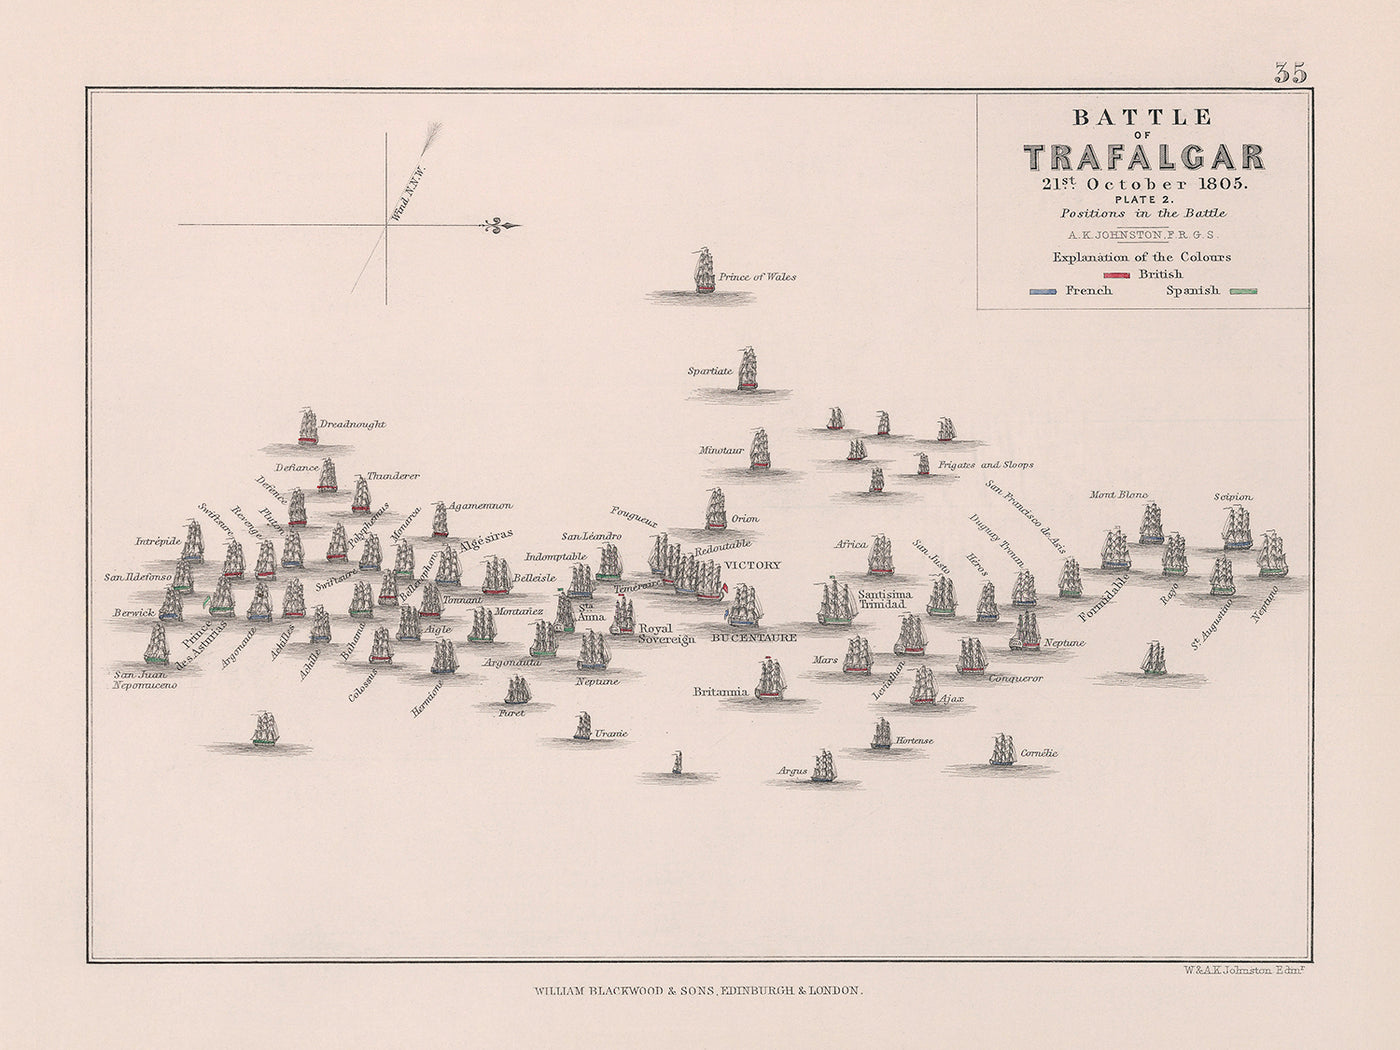 Schlacht von Trafalgar: Positionen in der Schlacht von AK Johnston, 1852